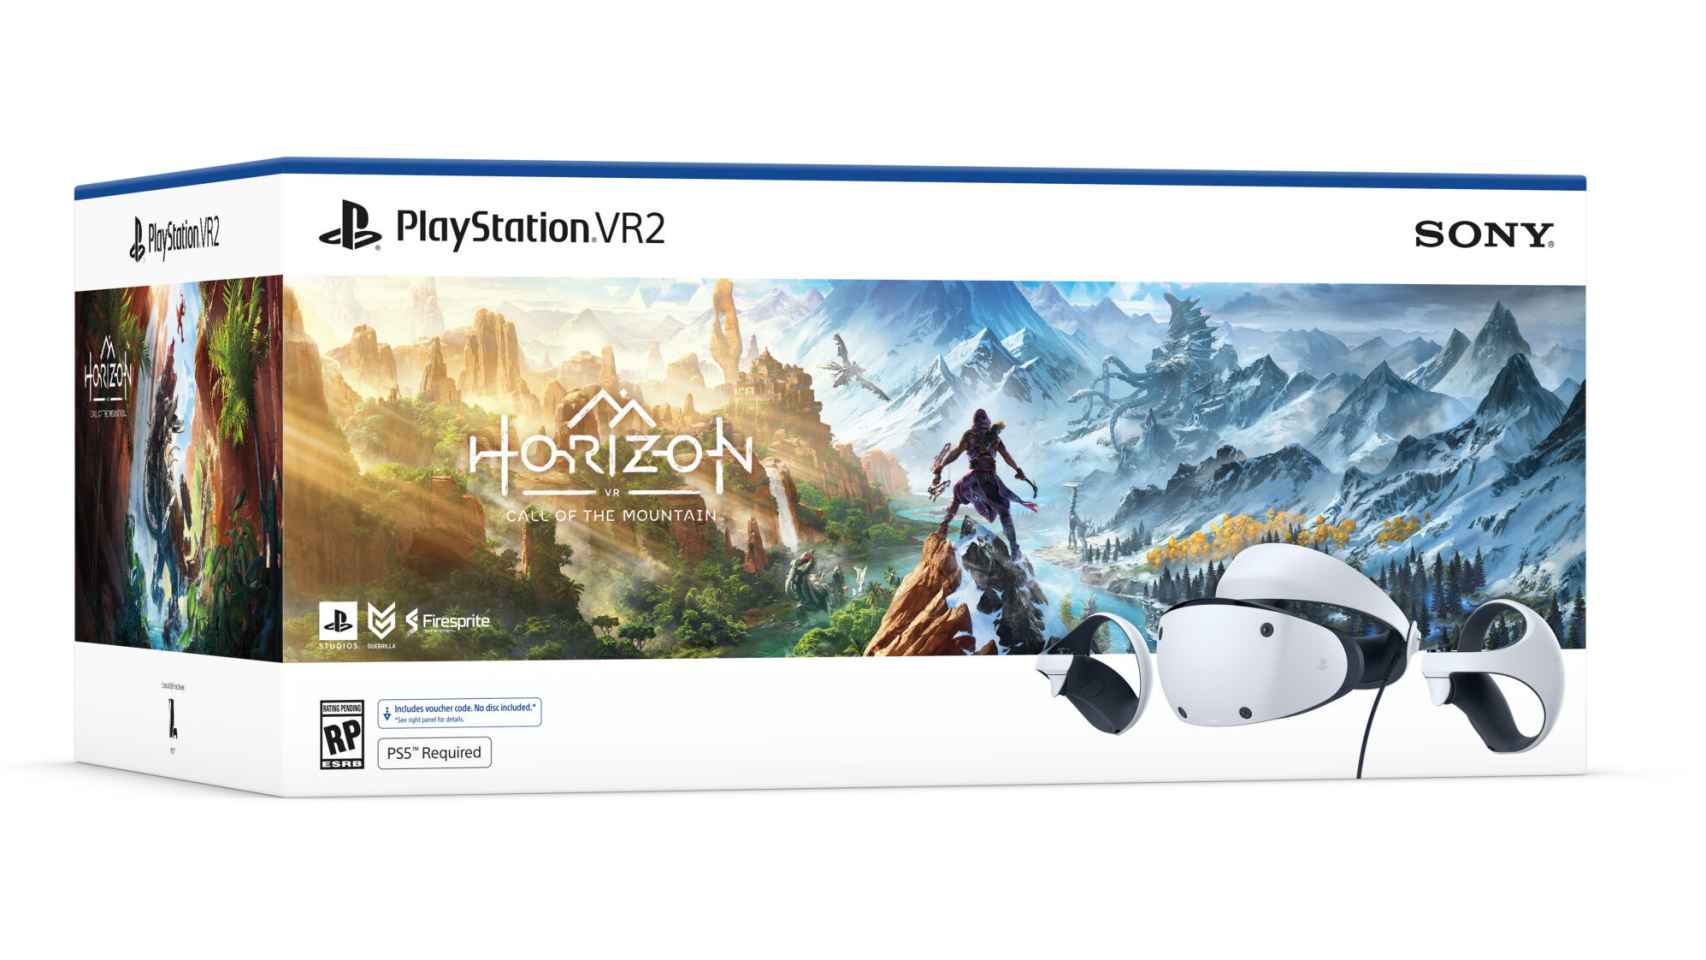 Pack de lanzamiento de PlayStation VR2 con el juego 'Horizon: Call of the Mountain'